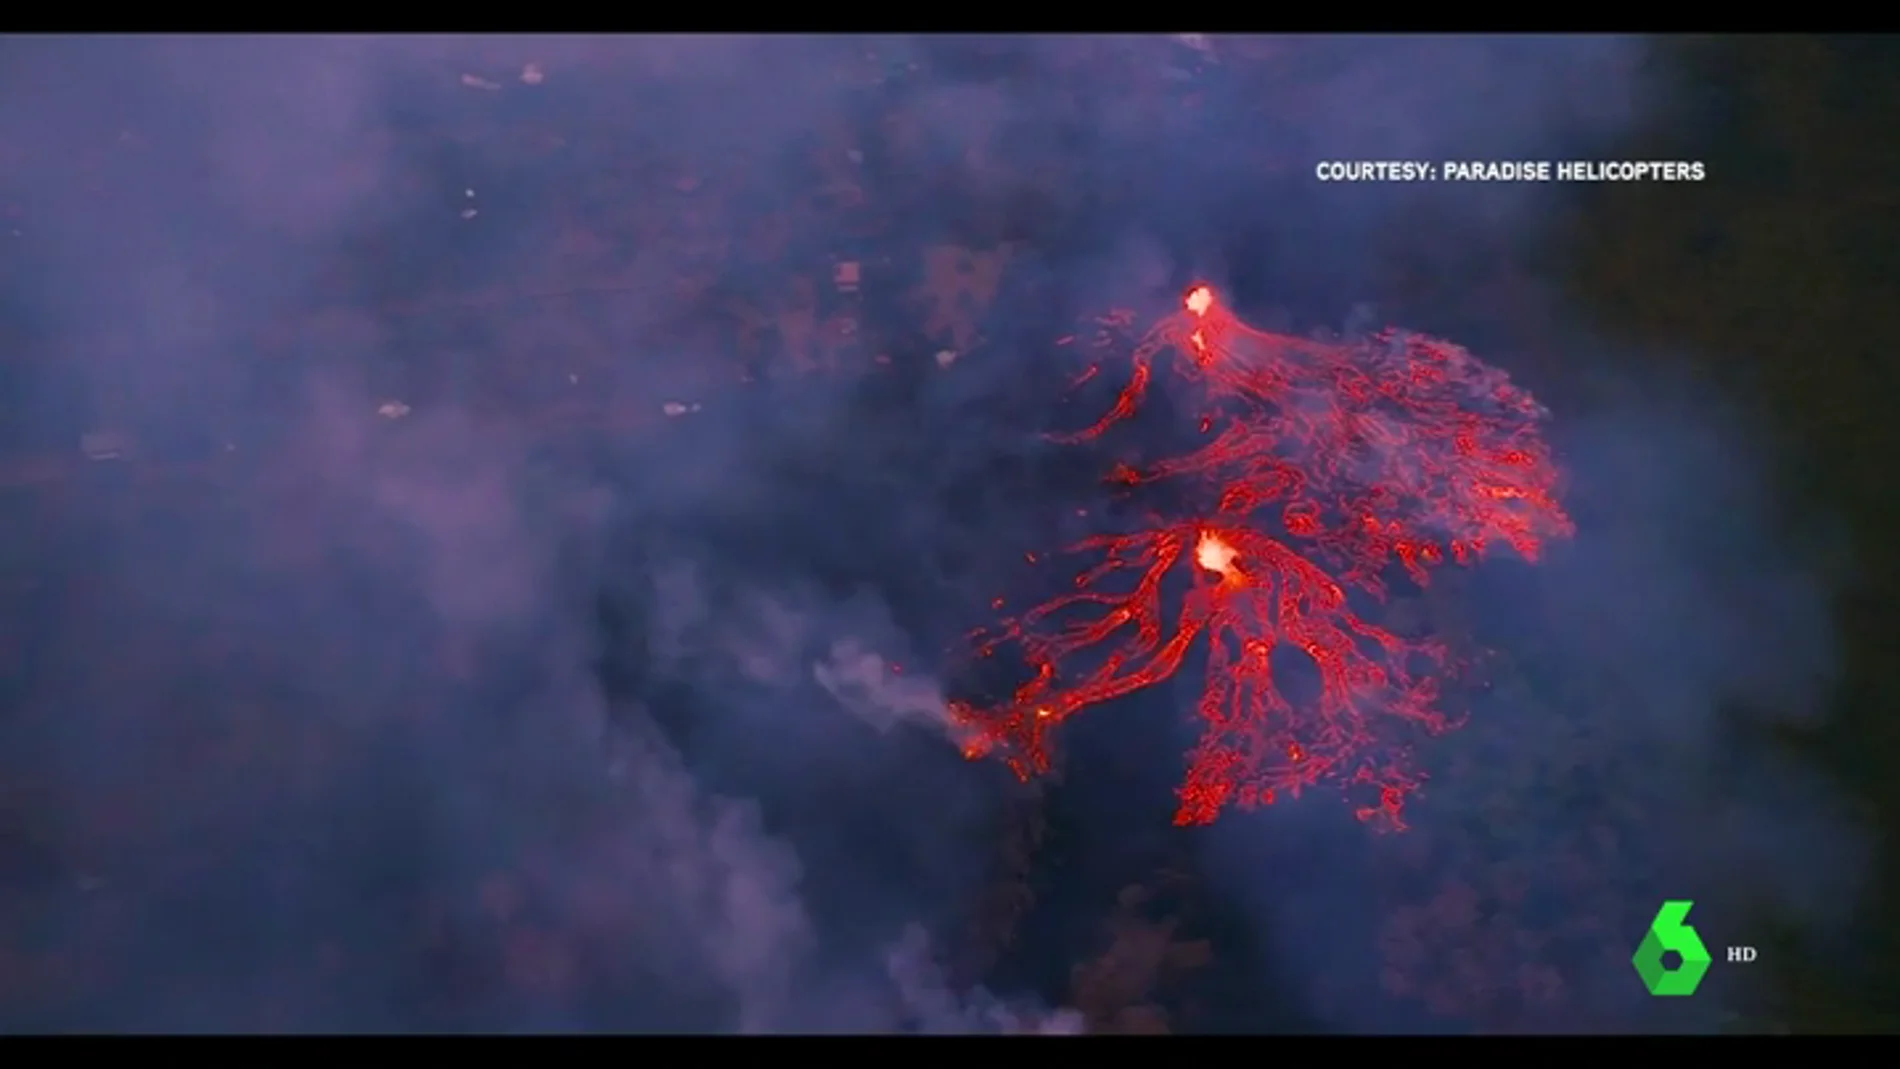 Continúa el riesgo en Hawái por la lava que brota de una veintena de fisuras del volcán Kilauea